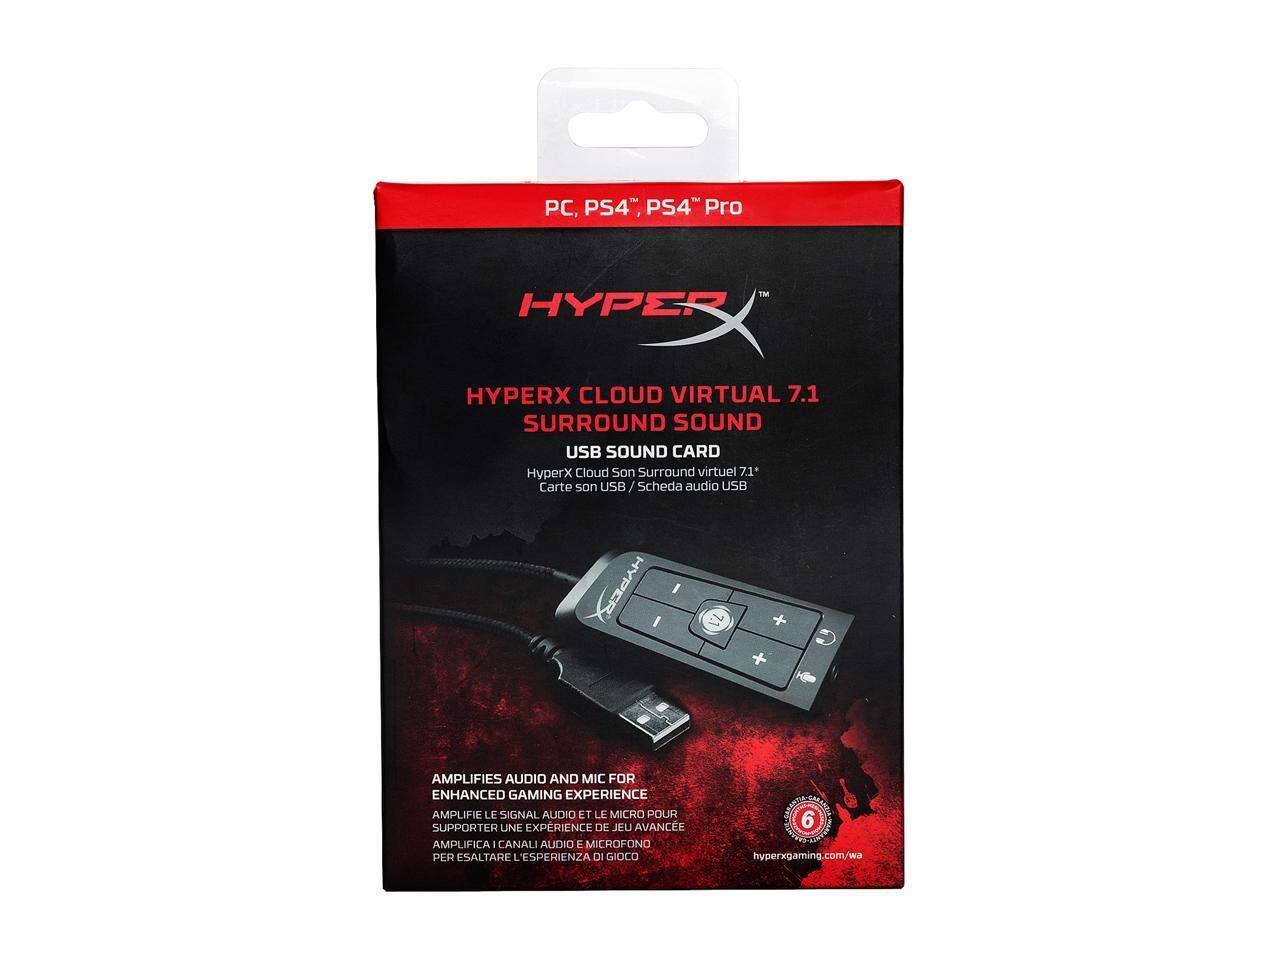 ہائپر ایکس کلاؤڈ 2 USB 7.1 ورچوئل سراؤنڈ ساؤنڈ کارڈ کلاؤڈ II 7.1 سراؤنڈ ساؤنڈ کارڈ - کلاؤڈ II بغیر باکس ہائپر ایکس کلاؤڈ II گیمنگ ہیڈسیٹ، 7.1 سراؤنڈ ساؤنڈ ہیڈ فون USB ساؤنڈ کارڈ نیا کنگسٹن ہائپر ایکس کلاؤڈ II DSP USB 